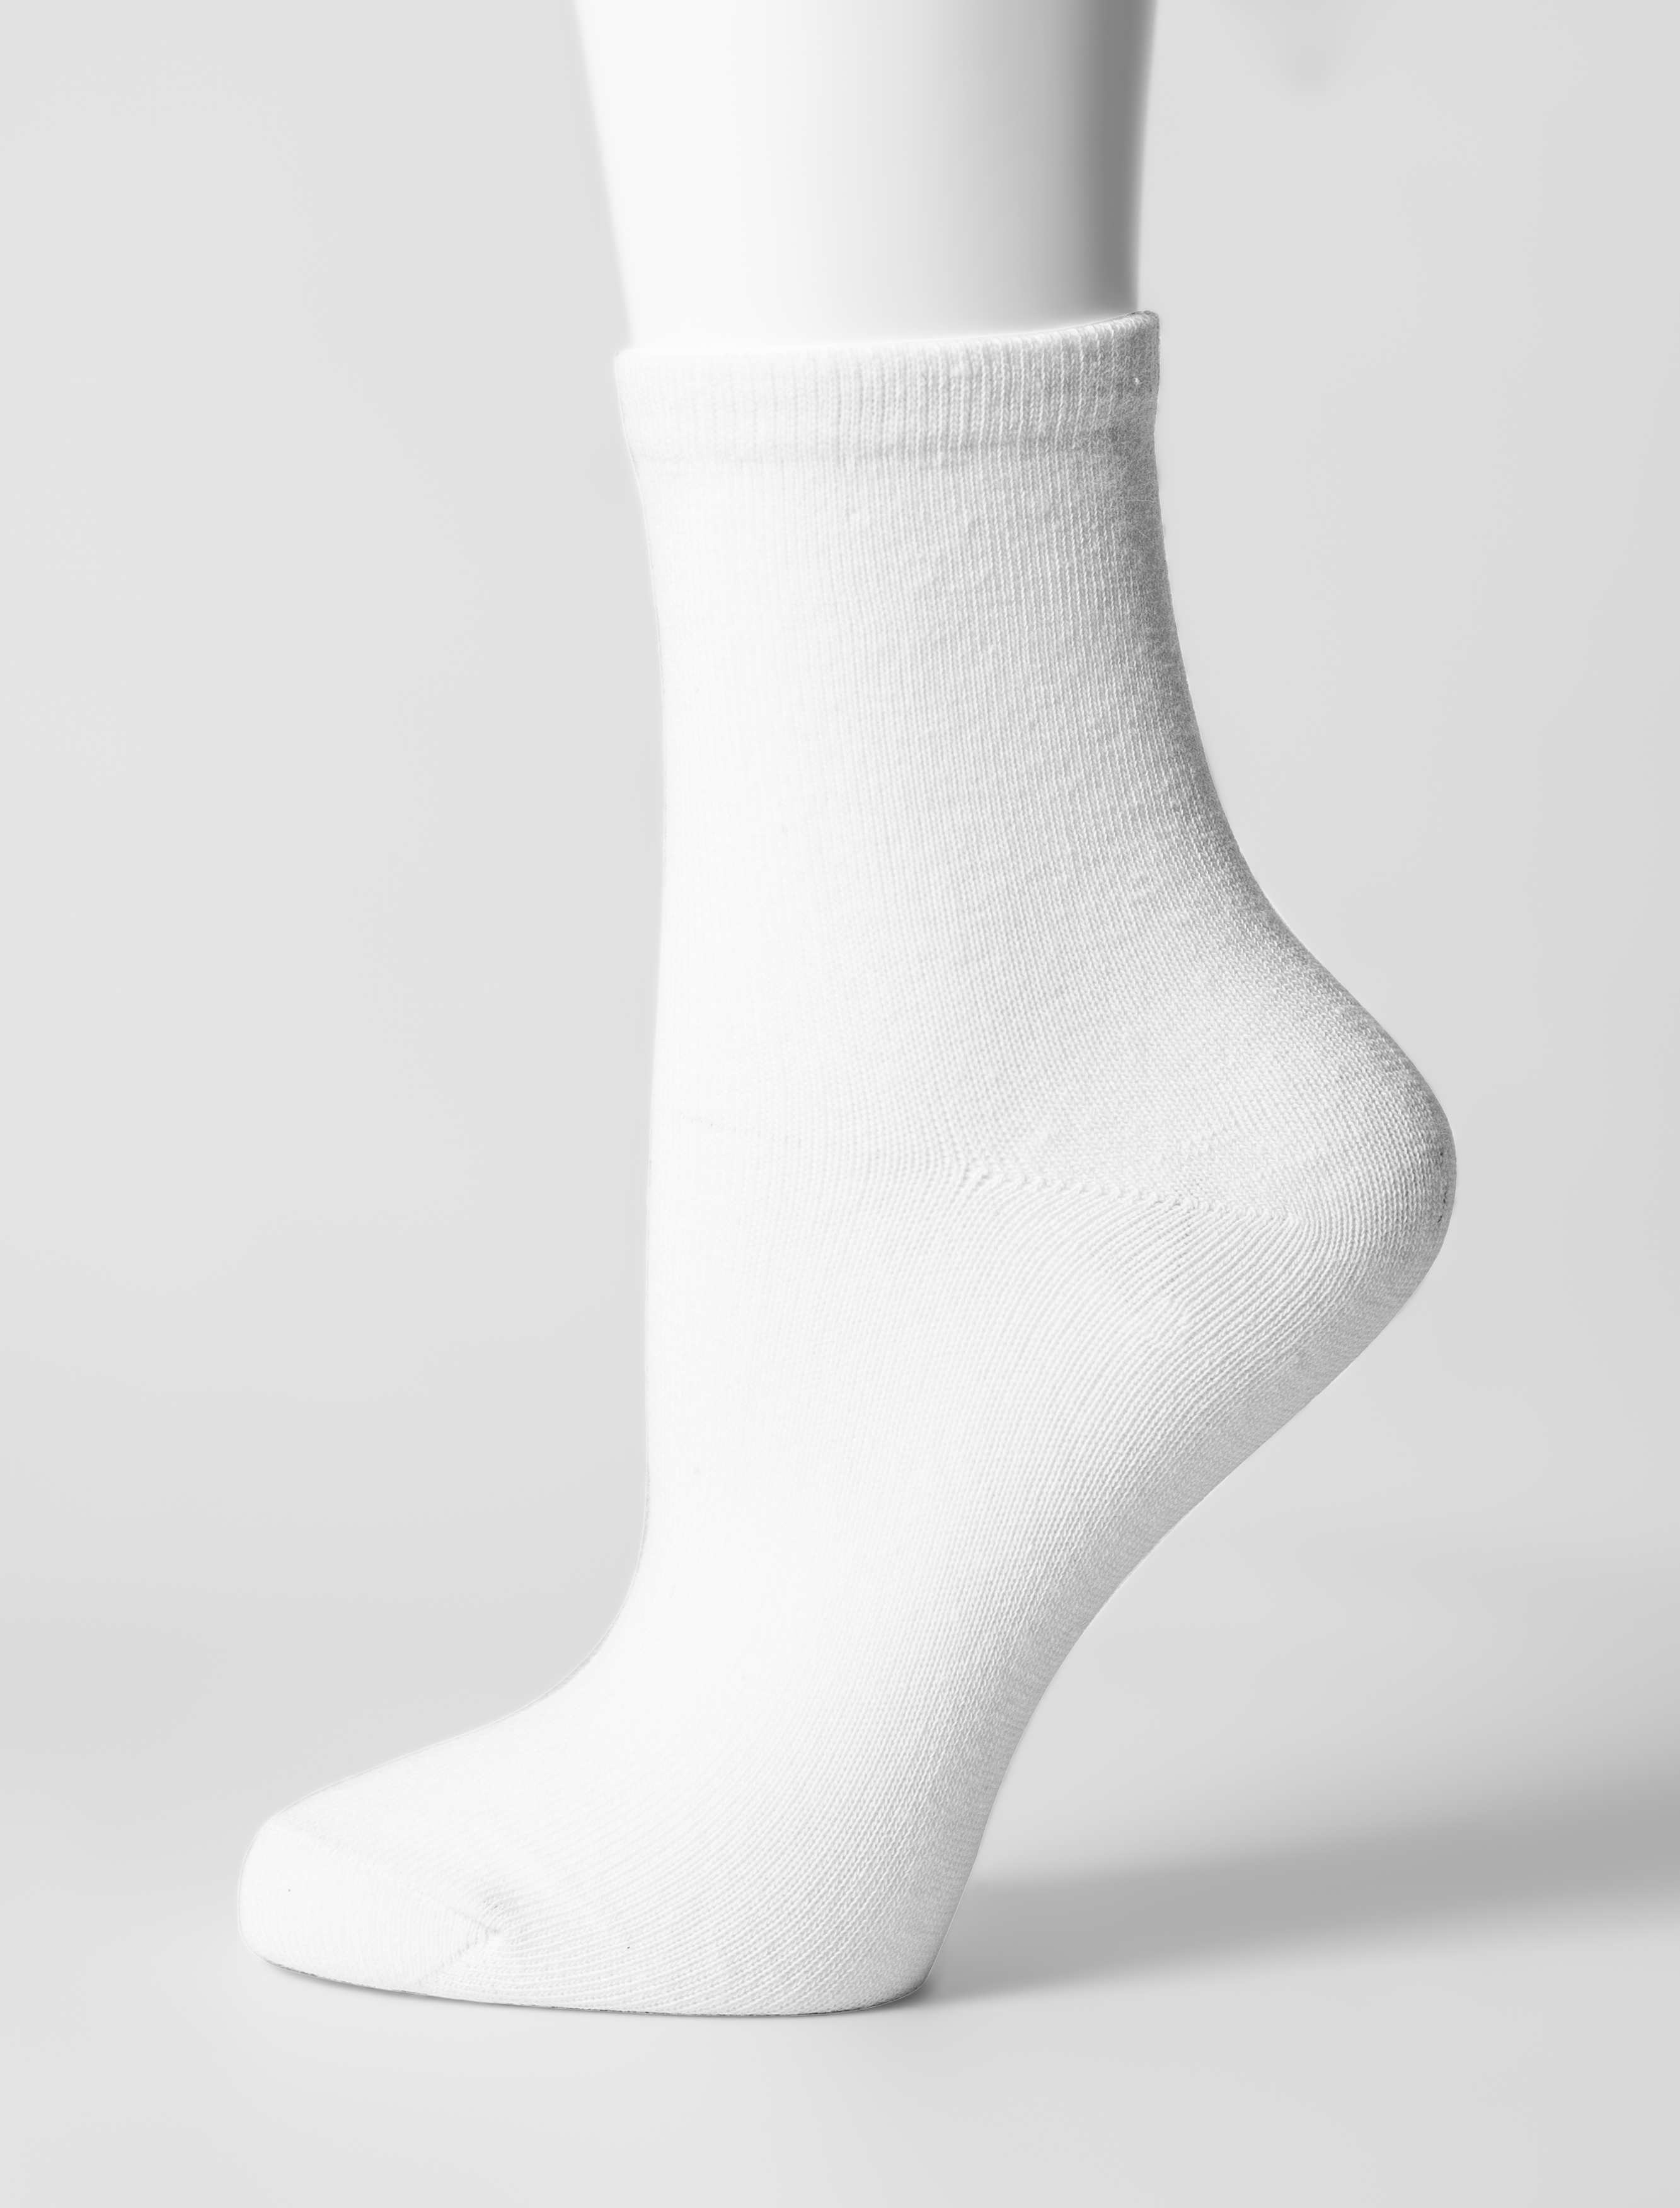 Чулочно-носочные изделия Носки детские ойман р.20-22 3 пары белый bt004-b